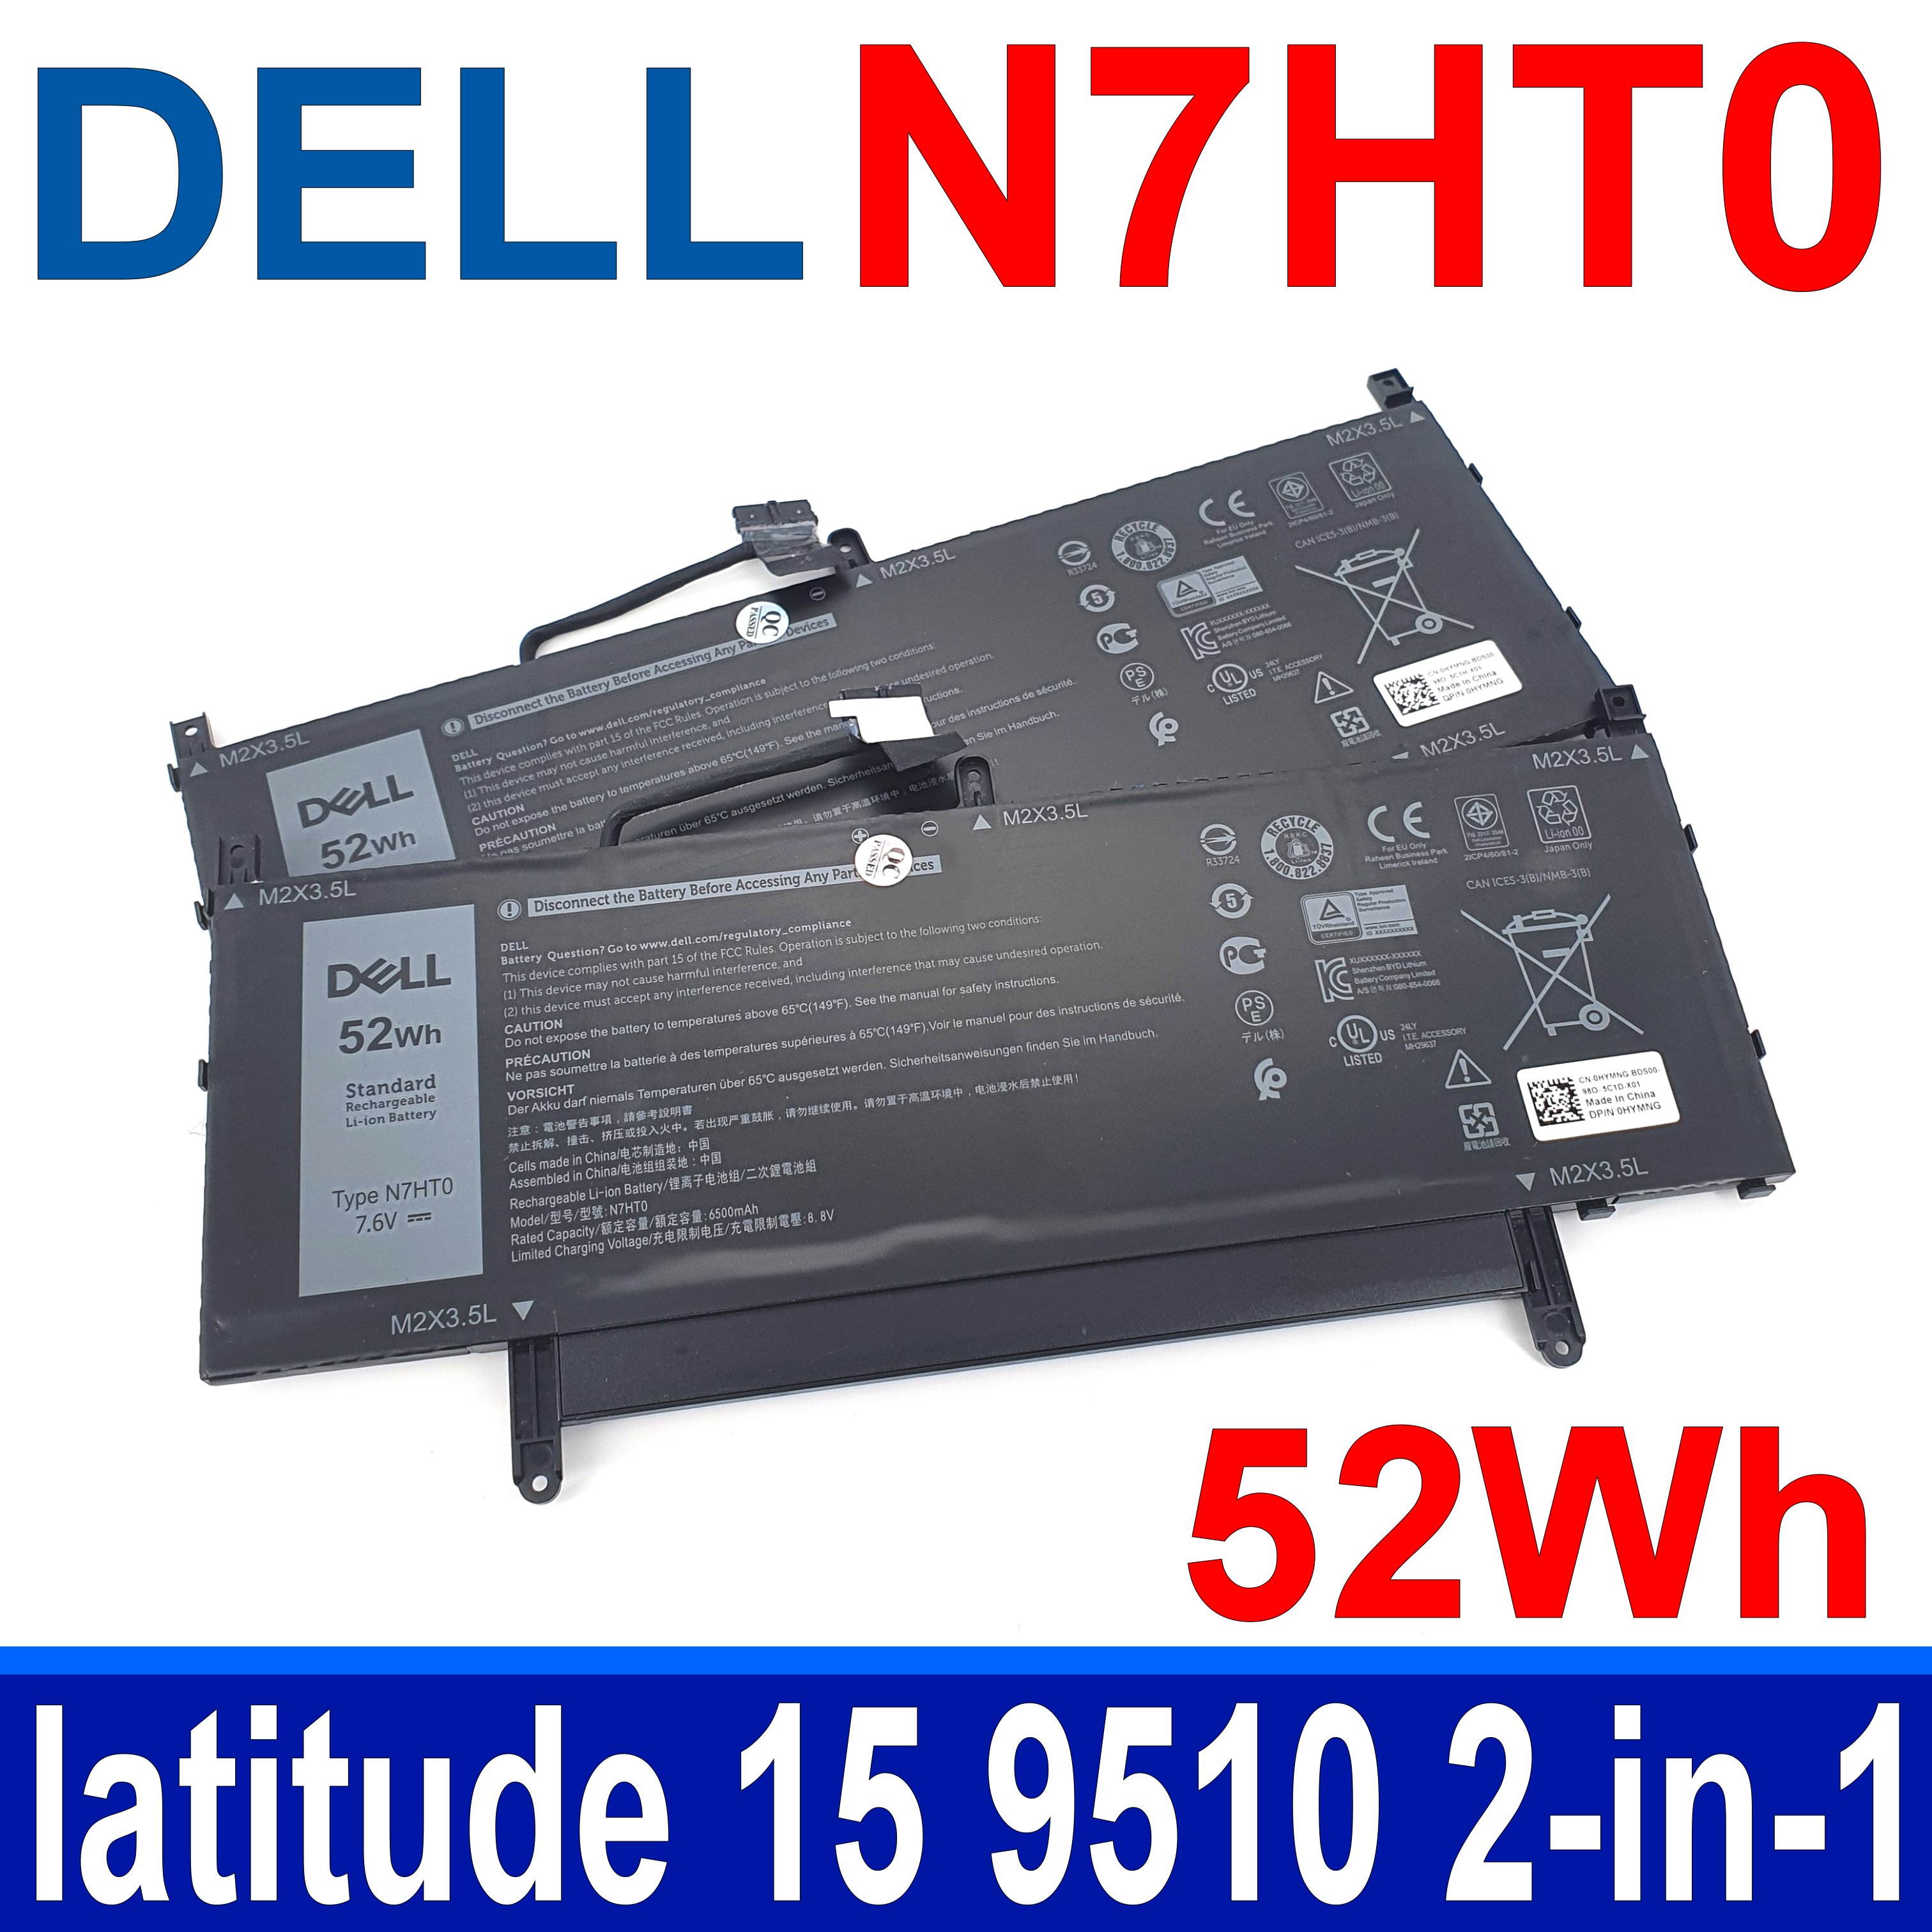 戴爾 DELL N7HT0 52Wh 原廠電池 TVKGH(88Wh) latitude 15 9510 2-in-1